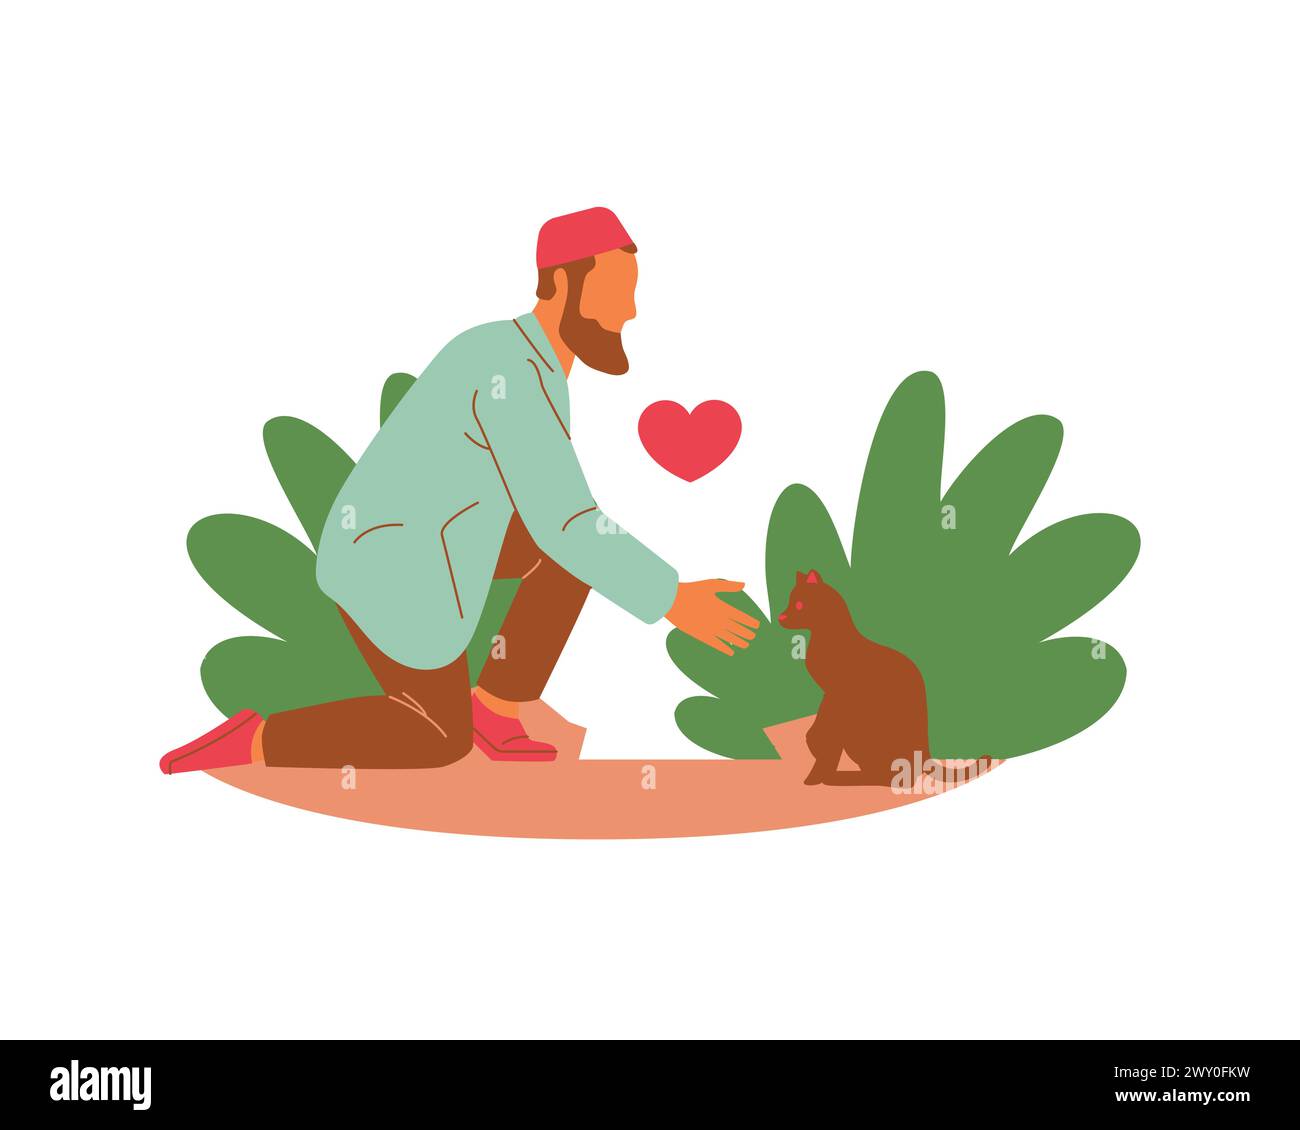 Un jeune homme arabe volontaire nourrissant un chat et des plantes dans la conception d'illustration vectorielle de la scène du parc. Conception de concept d'accueil et d'adoption d'animaux. Illustration de Vecteur